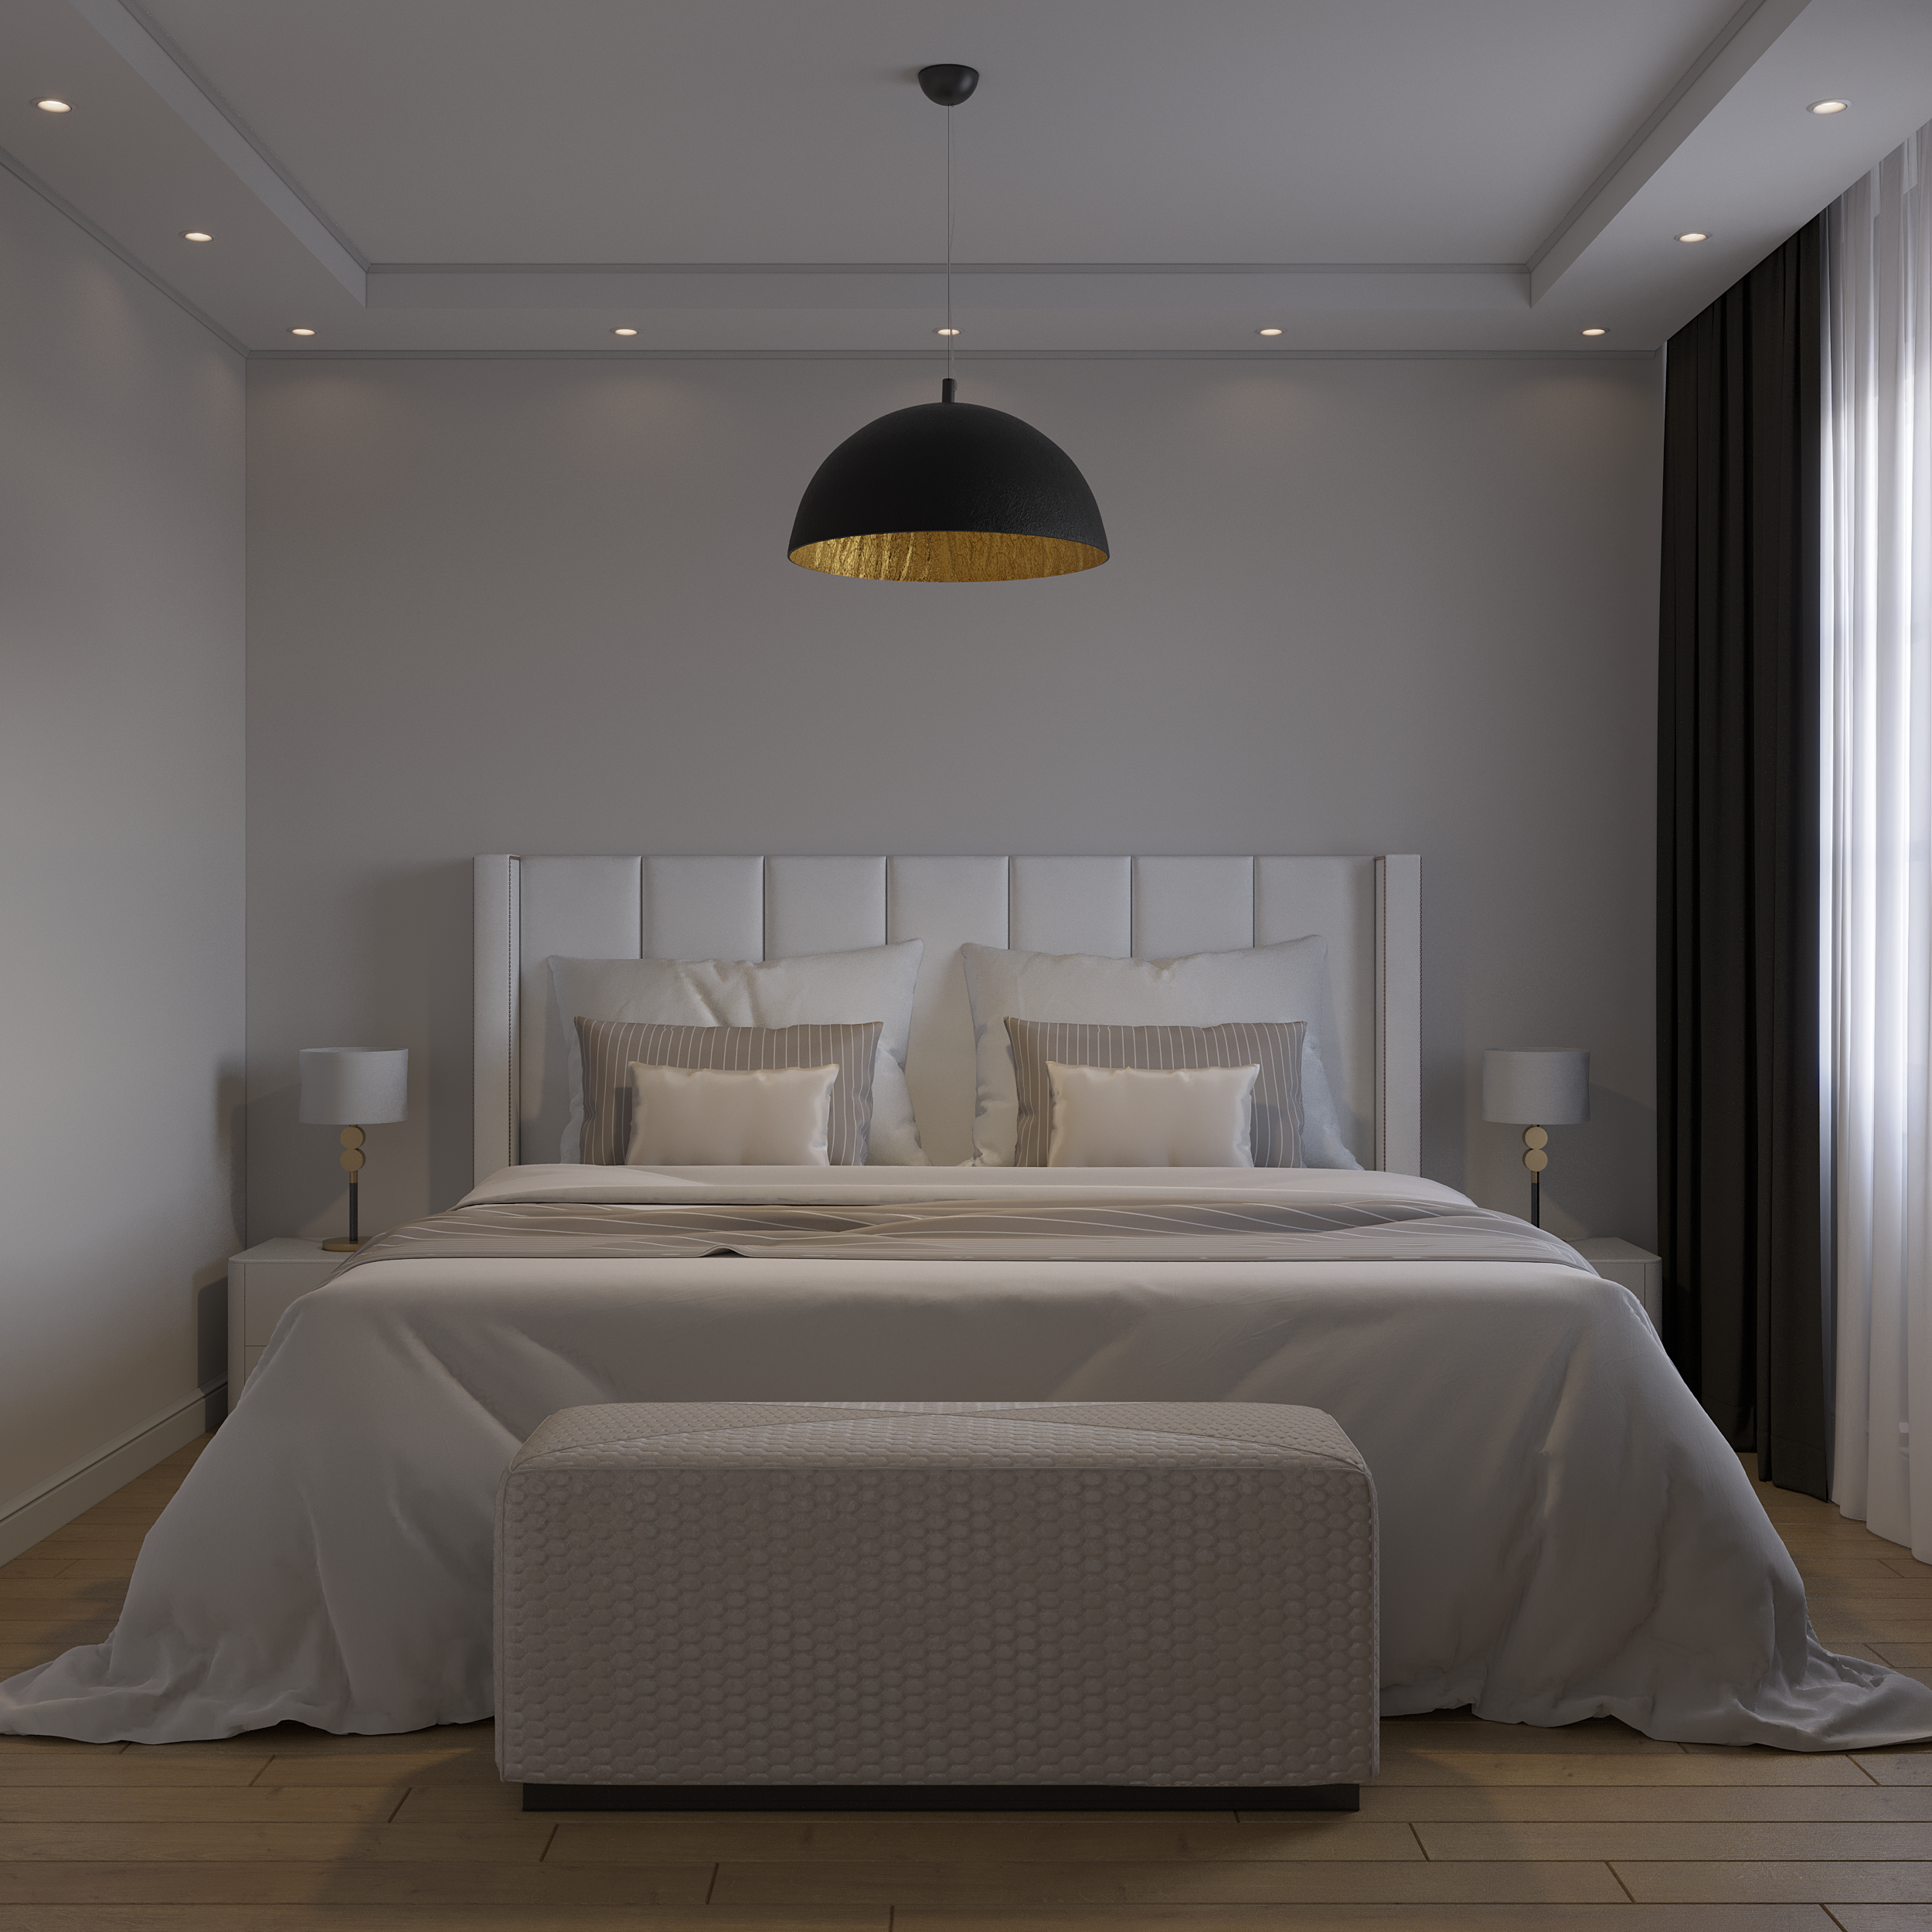 Интерьер спальни с бра над кроватью, подсветкой светодиодной и светильниками над кроватью